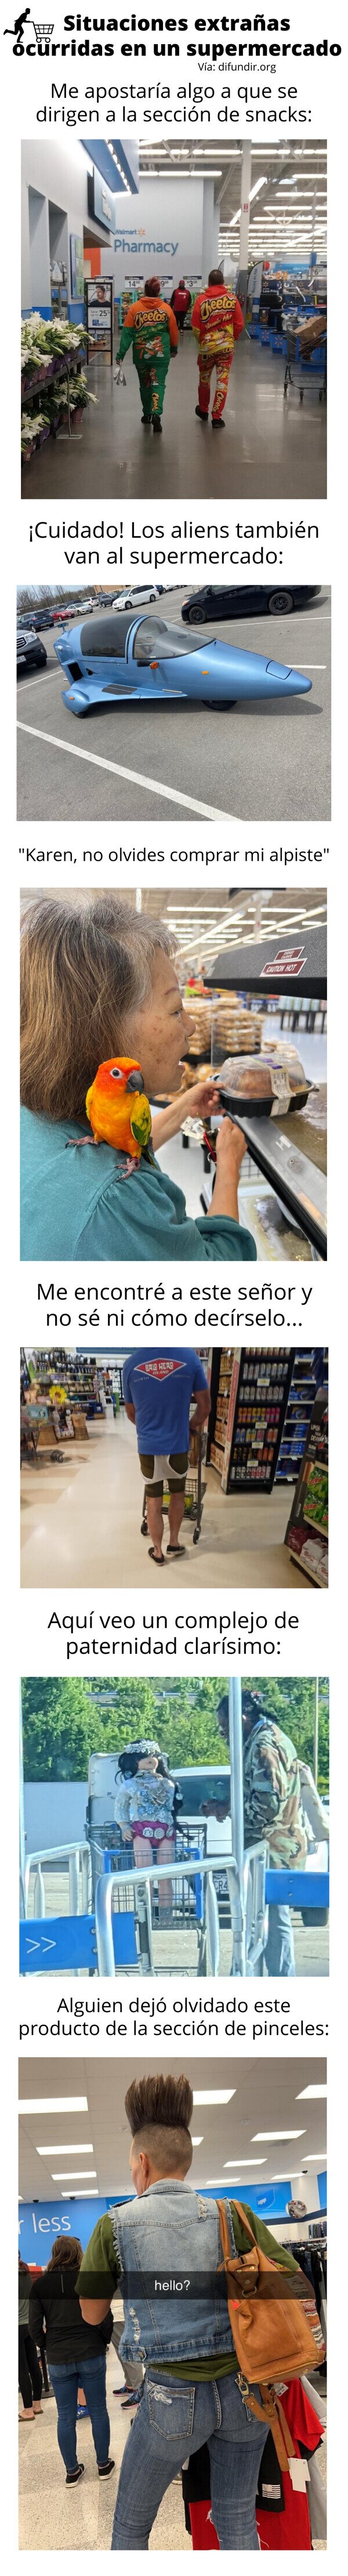 Meme_otros - Situaciones extrañas ocurridas en un supermercado